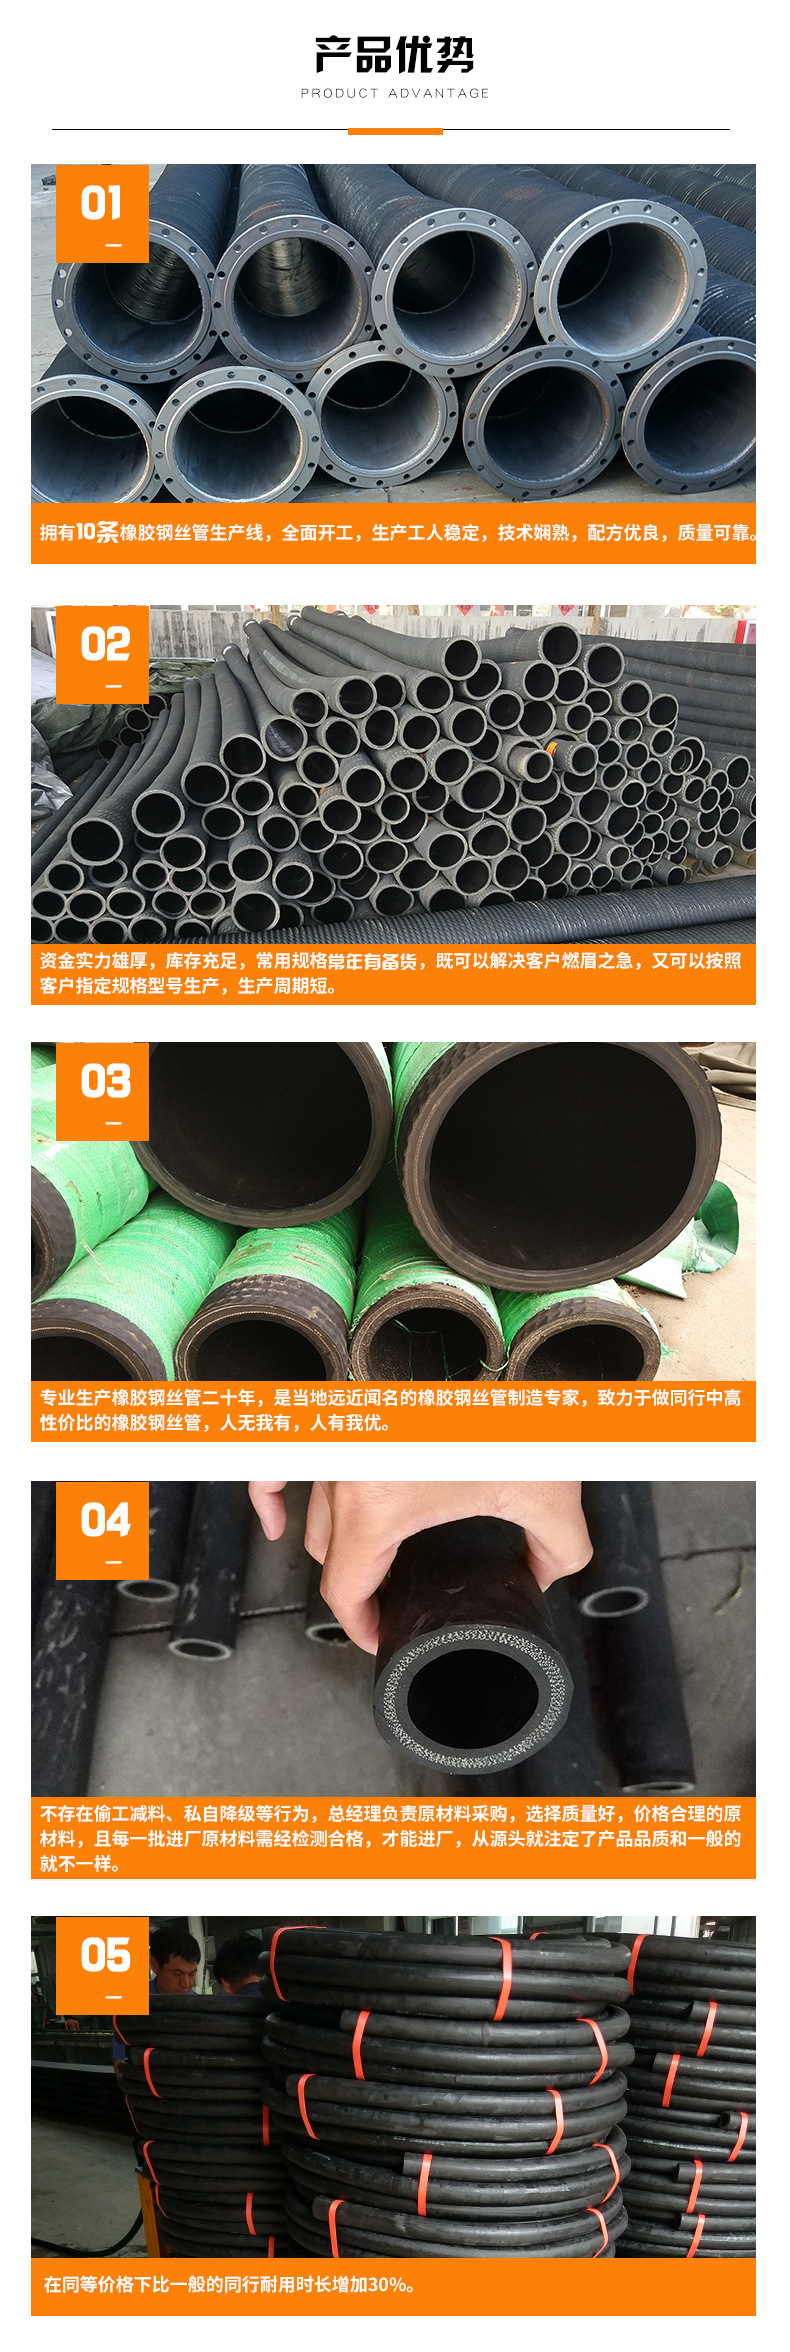 大口径排吸胶管 钢丝缠绕 吸水排泥抽沙专用 优质耐磨示例图5